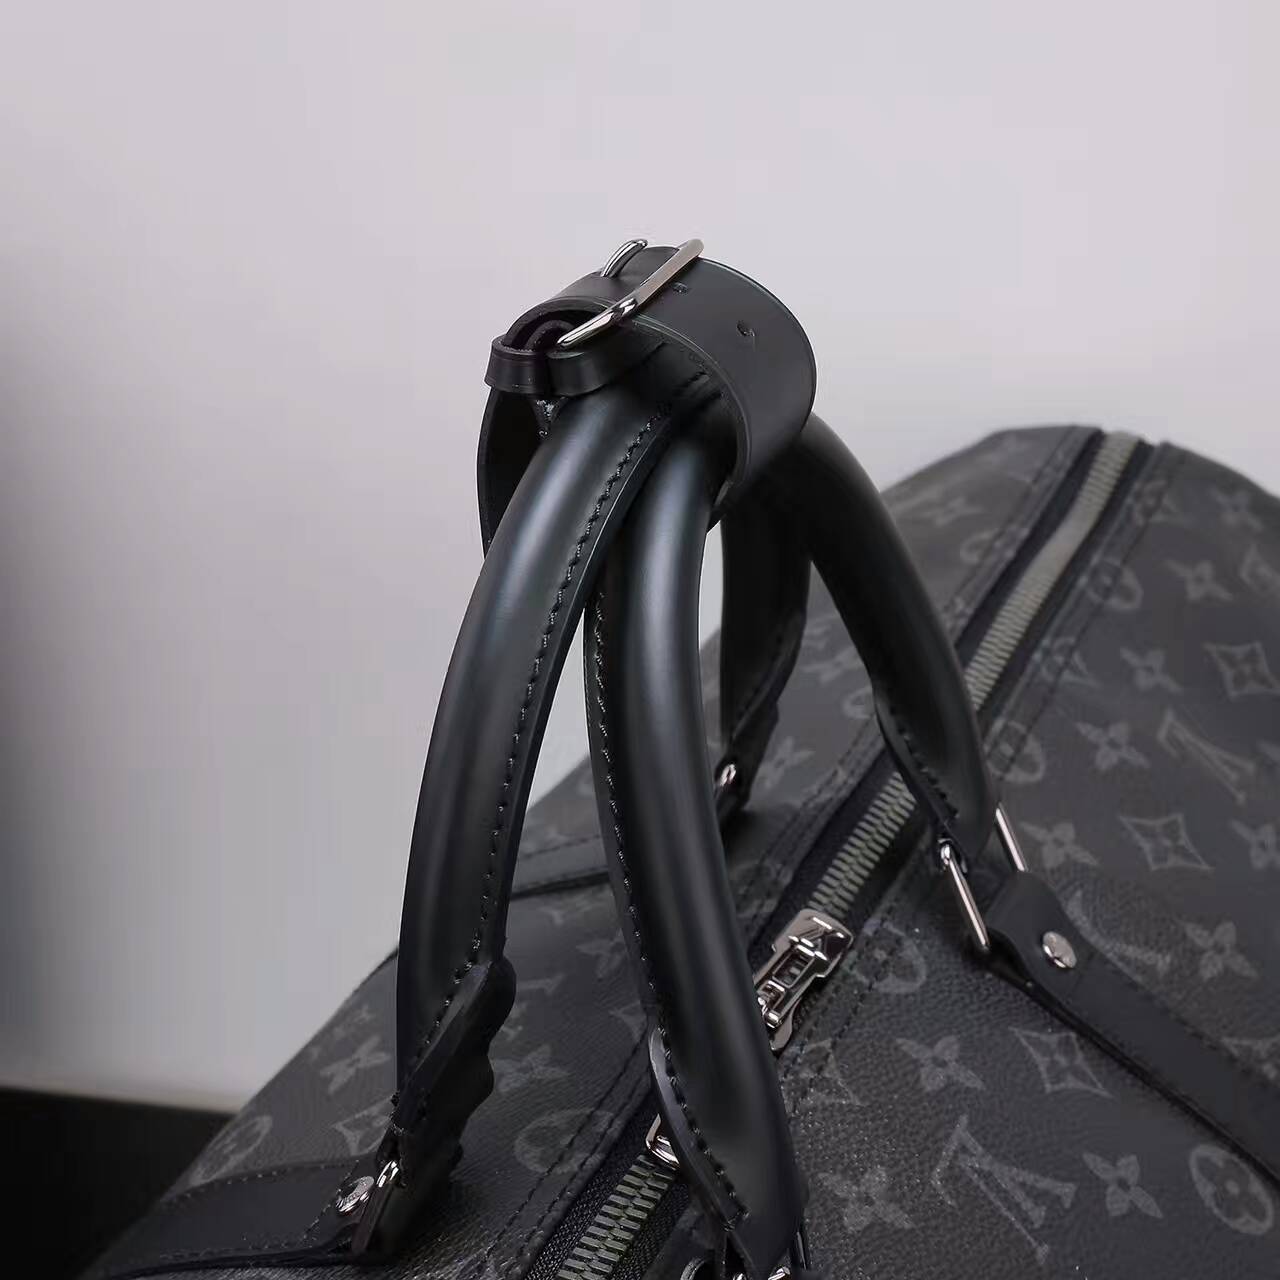 Túi xách Louis Vuitton Keepall 55CM Bandouliere-M40605-TXLV037